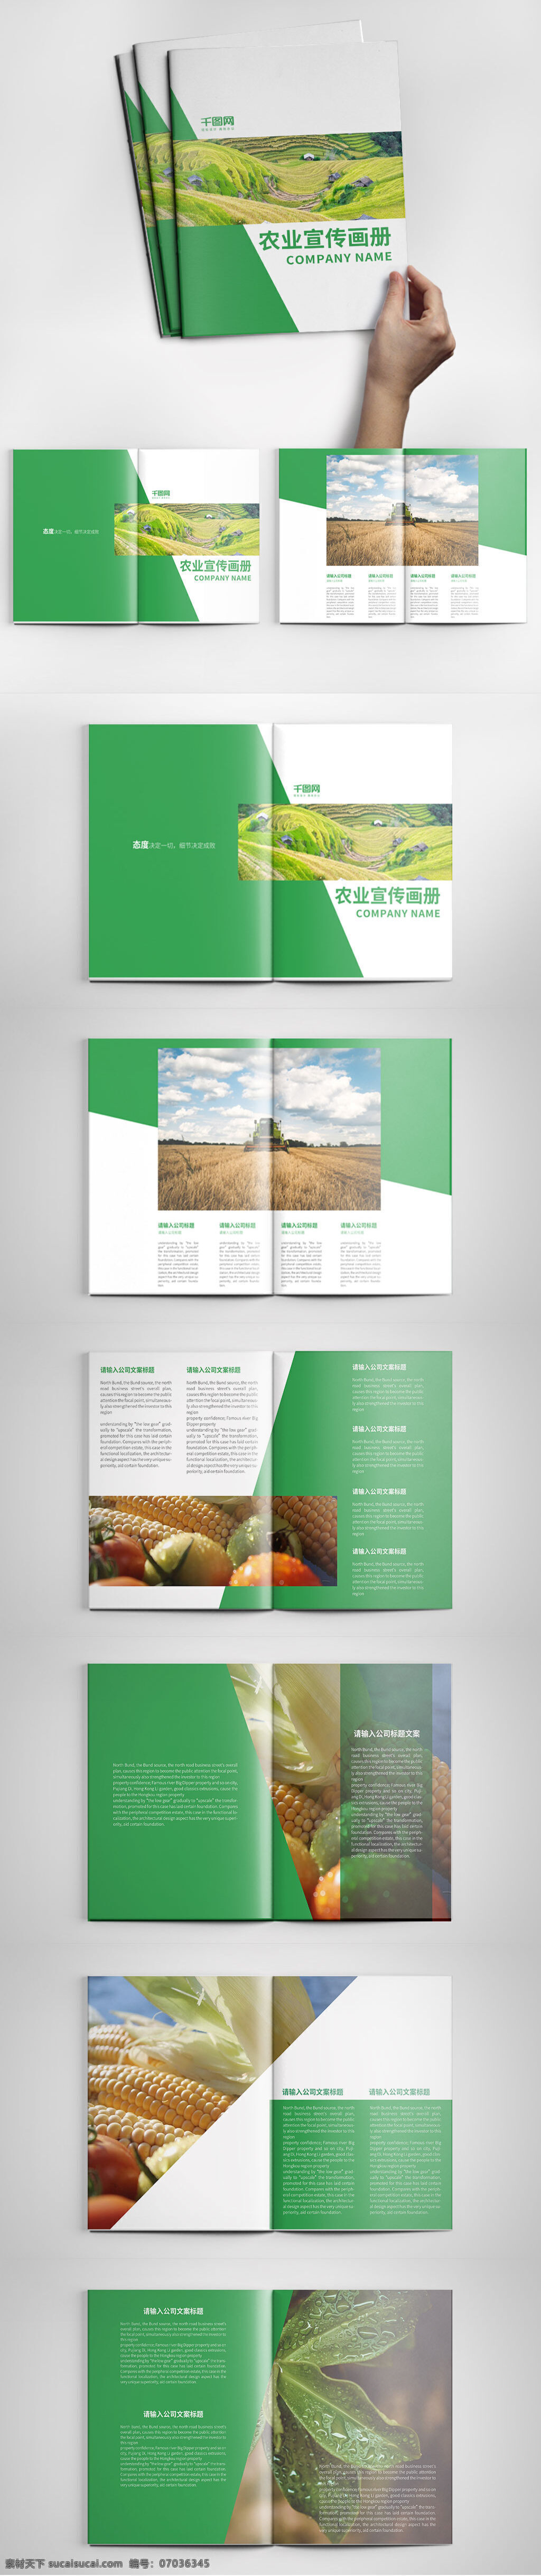 大气 绿色农业 宣传画 册设计 模板 大气画册 高档画册设计 公司宣传画册 简约画册 绿色画册 农业画册 企业画册